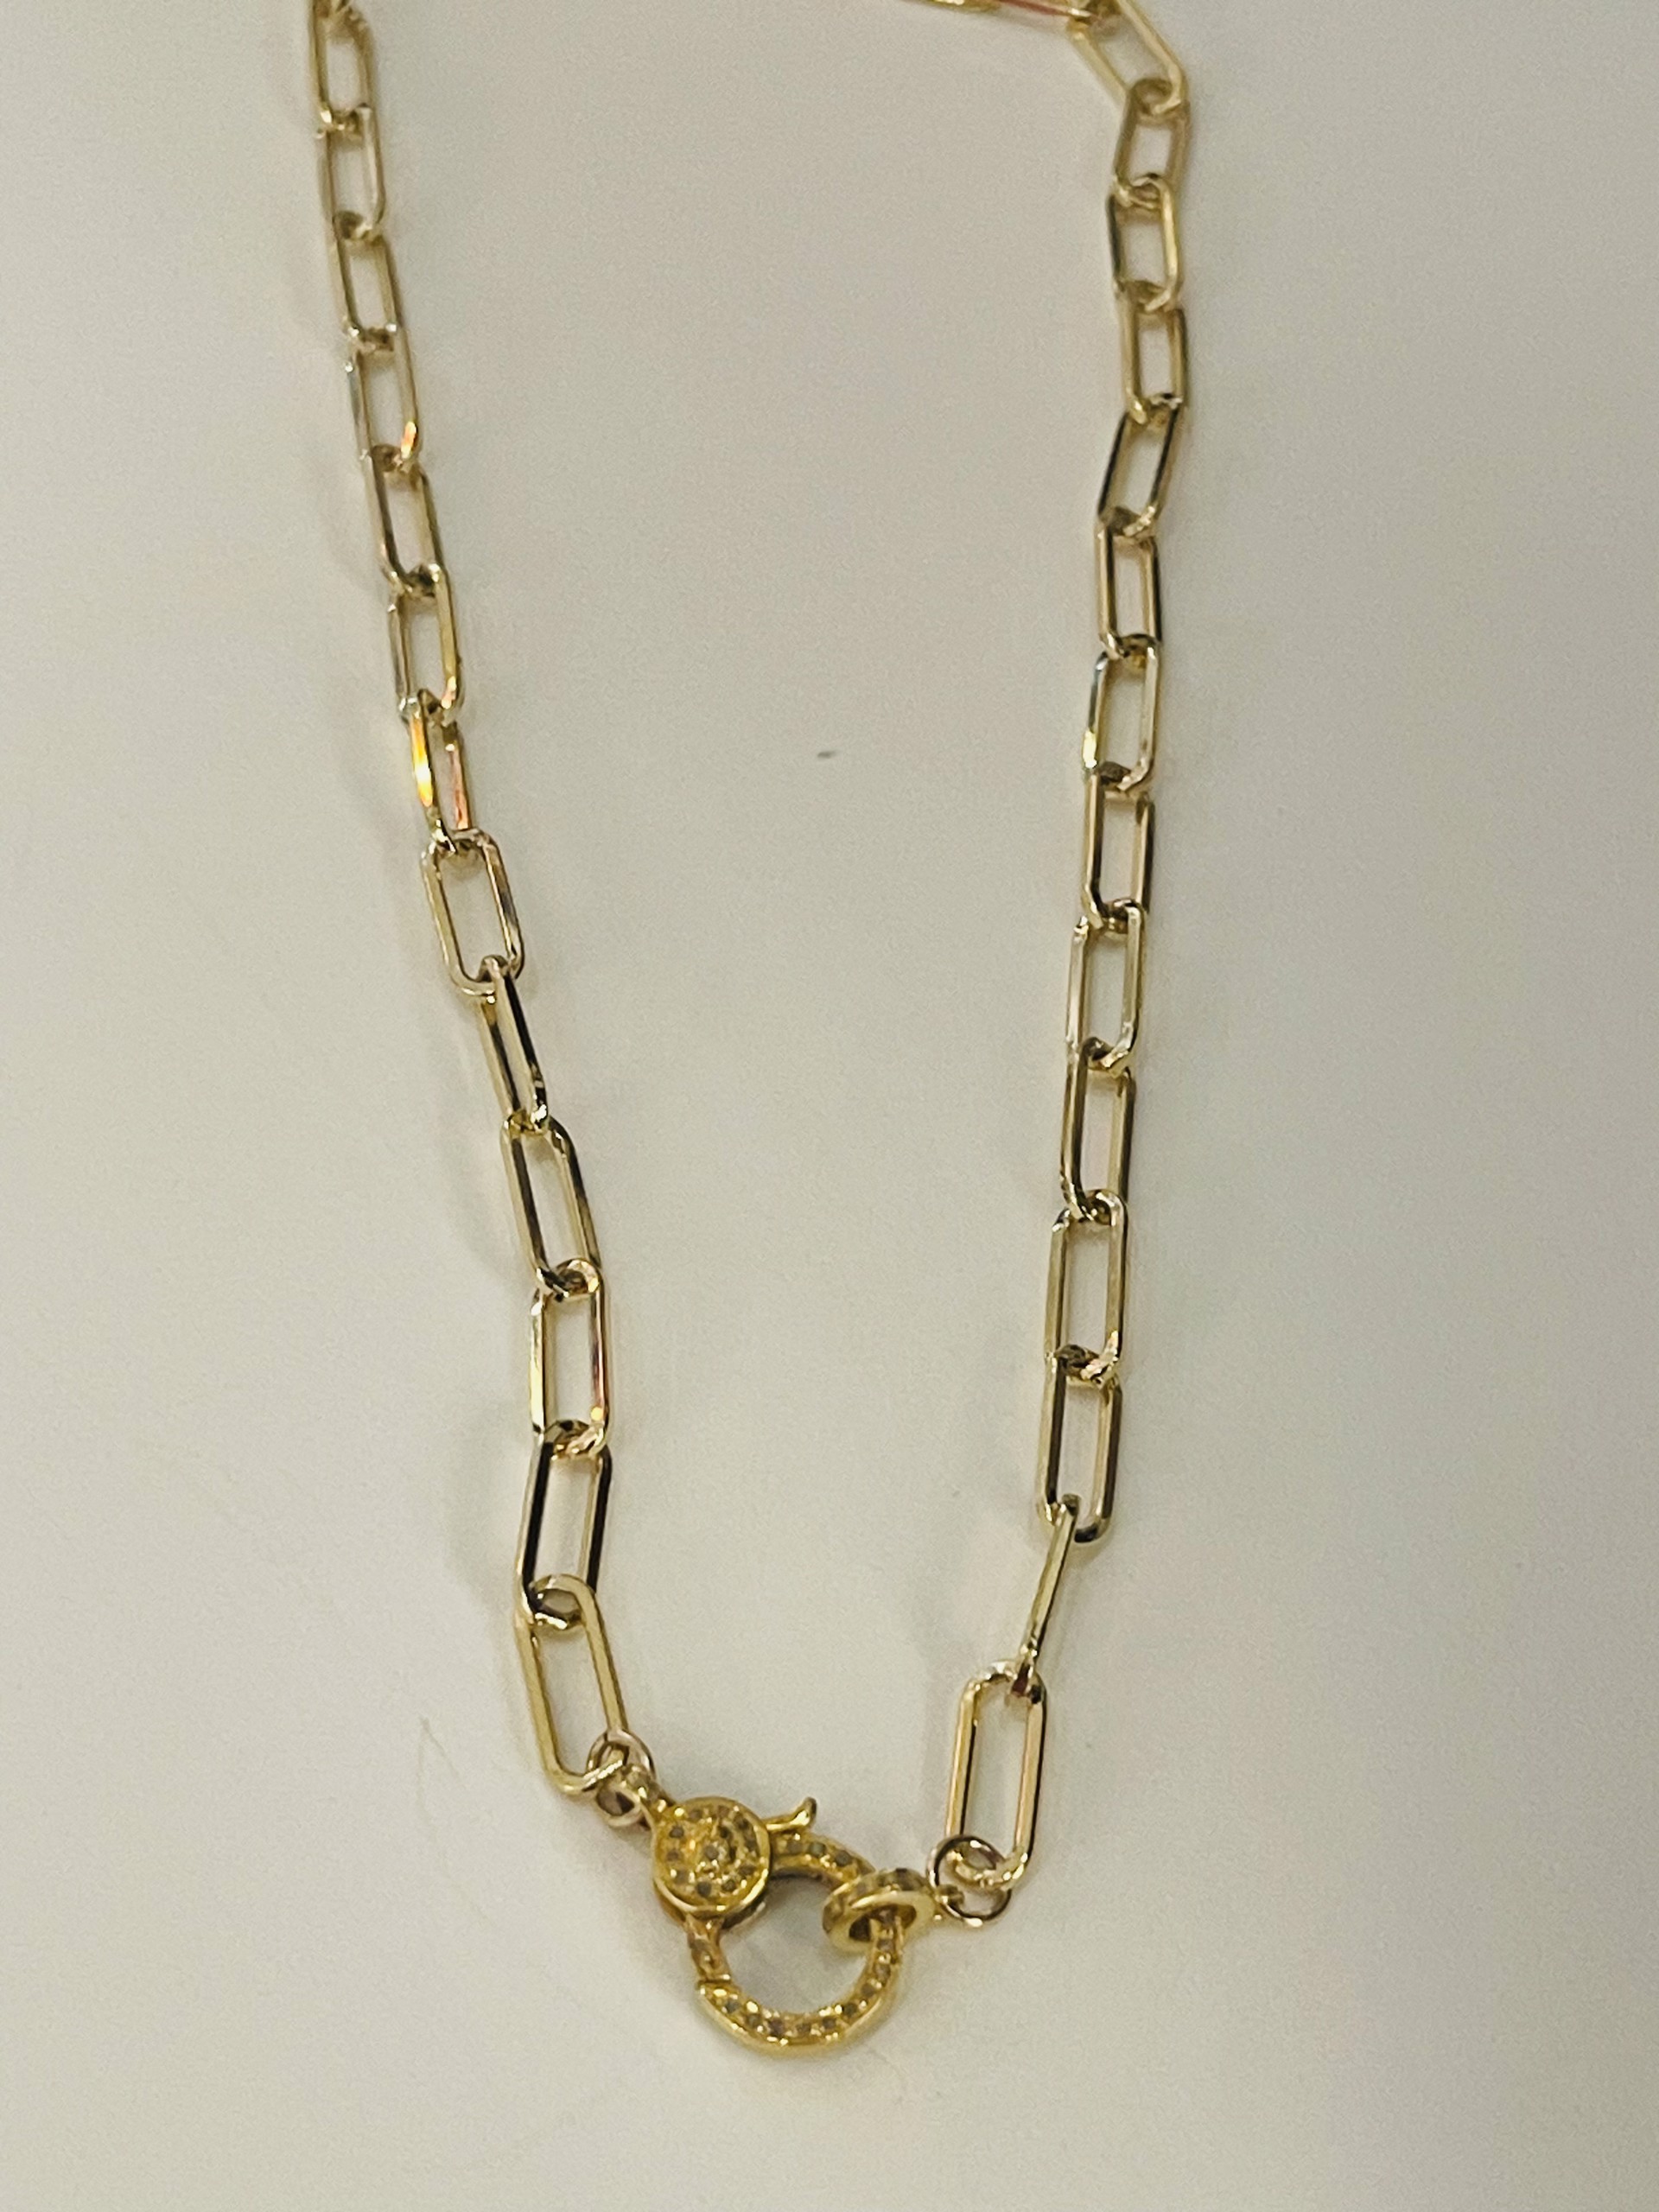 Gold Pave Diamond Chain by Karen Birchmier